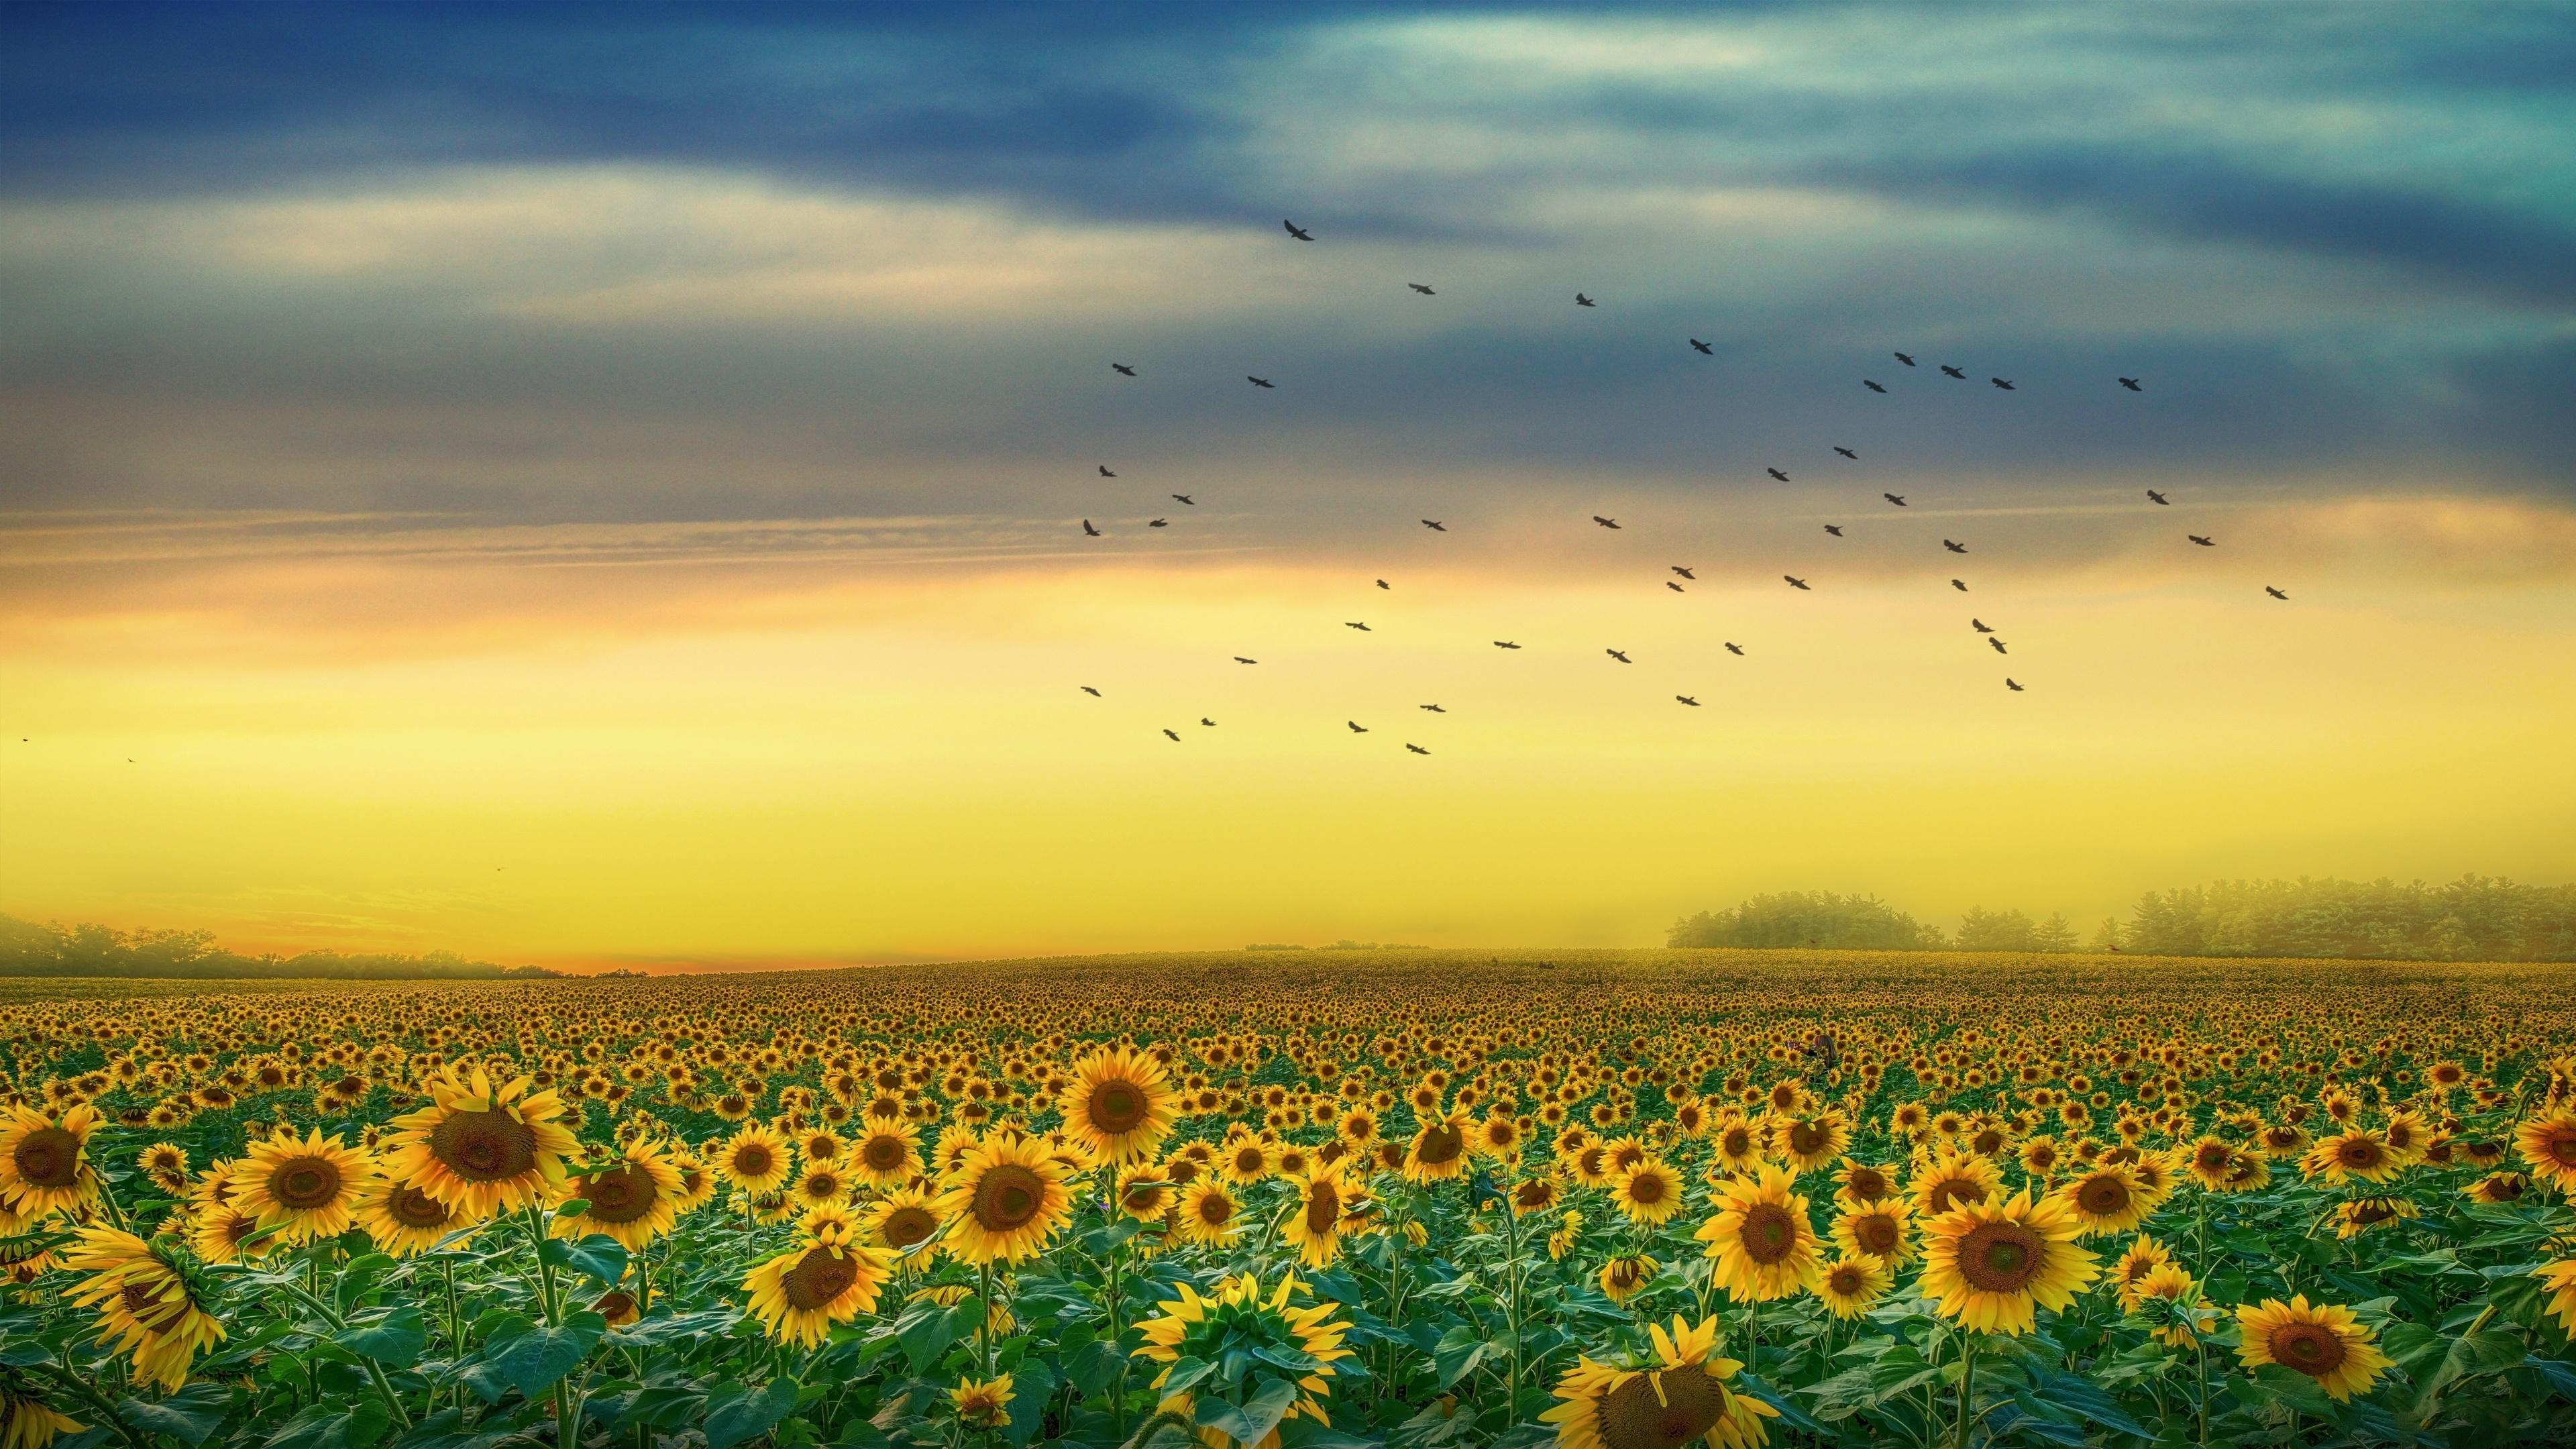 Sunflower Field at Sunset 4k Ultra HD Wallpaper. Background